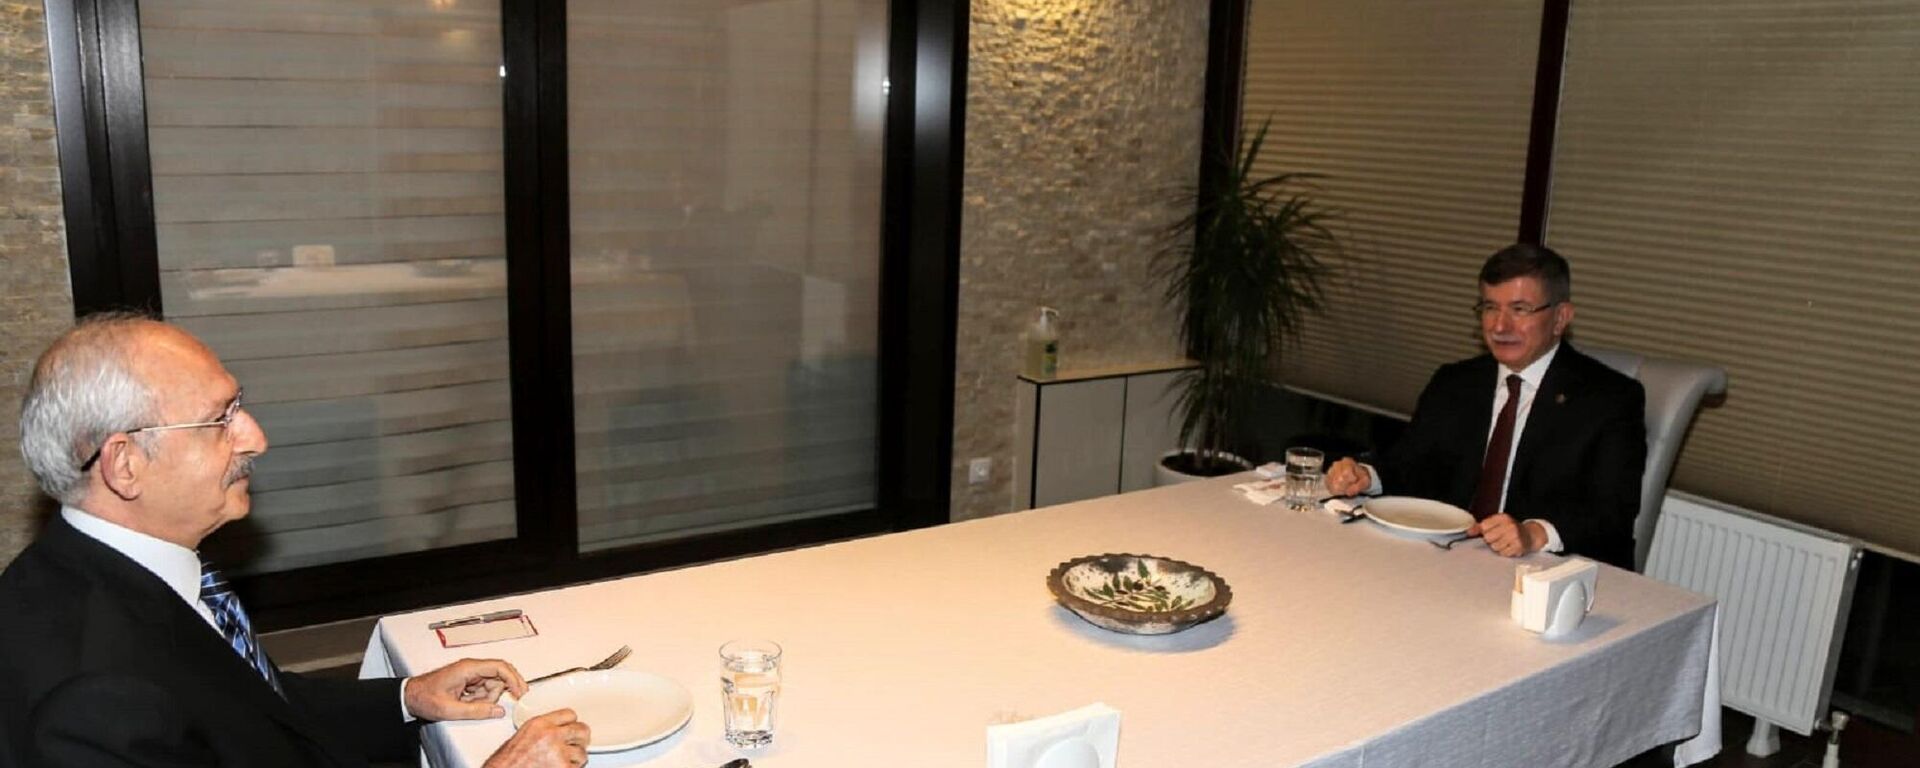 Gelecek Partisi Genel Başkanı Ahmet Davutoğlu ile Cumhuriyet Halk Partisi (CHP) Genel Başkanı Kemal Kılıçdaroğlu, akşam yemeğinde bir araya geldi. - Sputnik Türkiye, 1920, 11.01.2022